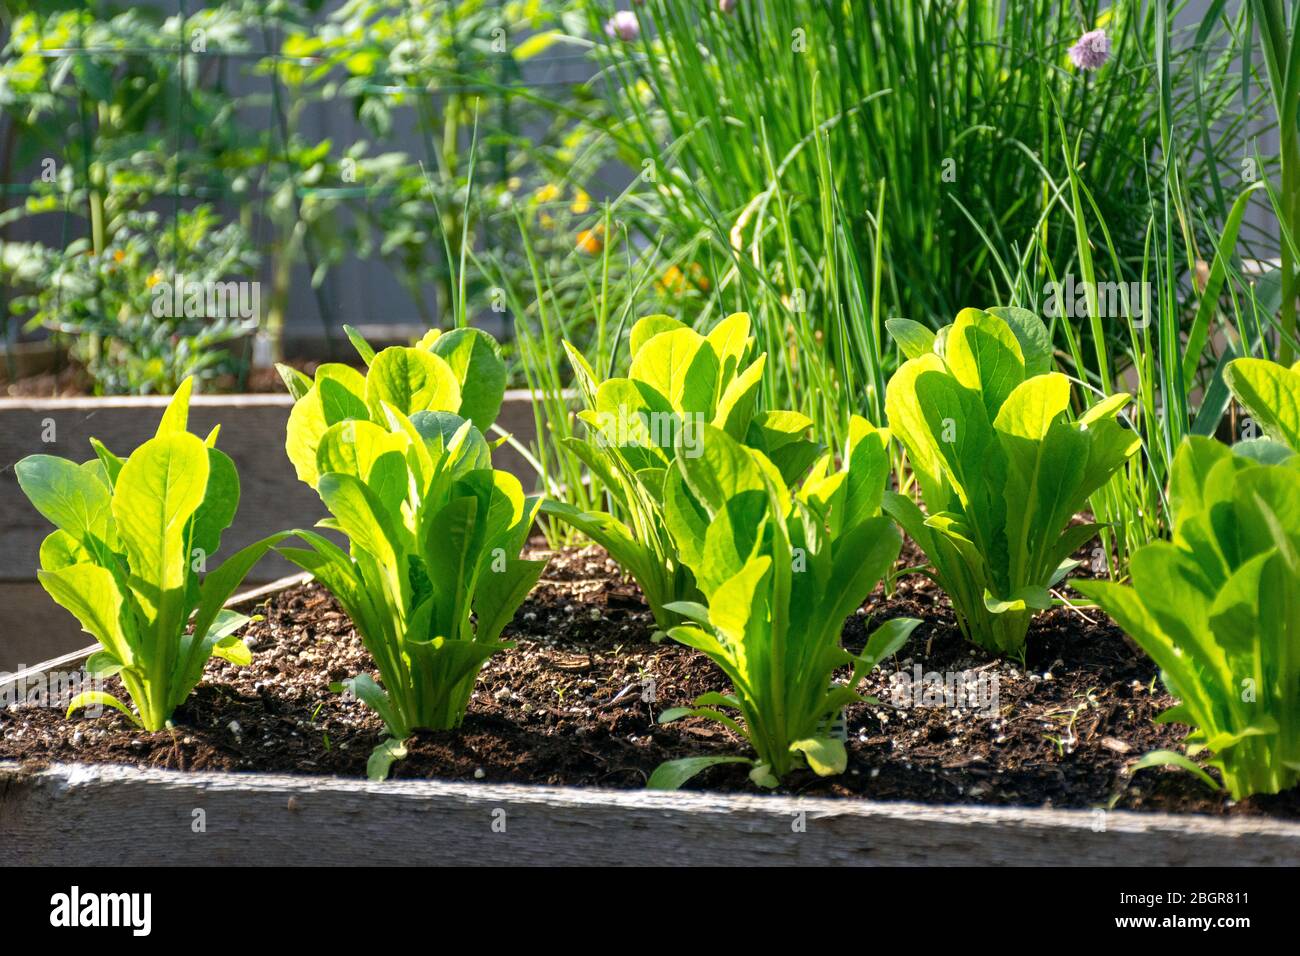 Une partie de la tendance à la croissance de votre propre nourriture, ce jardin de légumes de cour contient de grands lits élevés pour la culture des légumes et des herbes tout au long de l'été. Banque D'Images